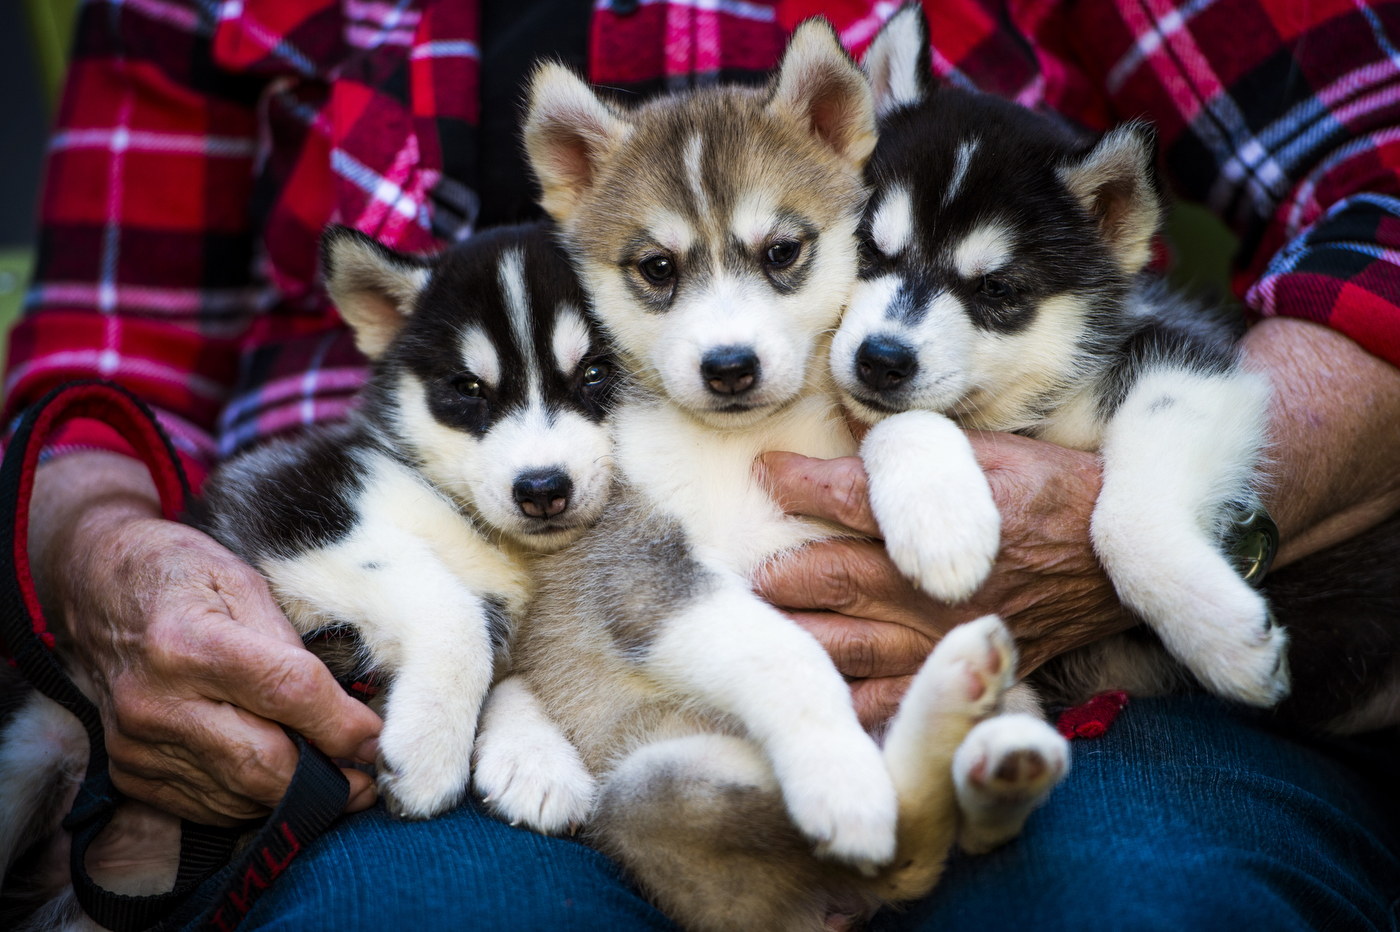 Three cute husky puppies